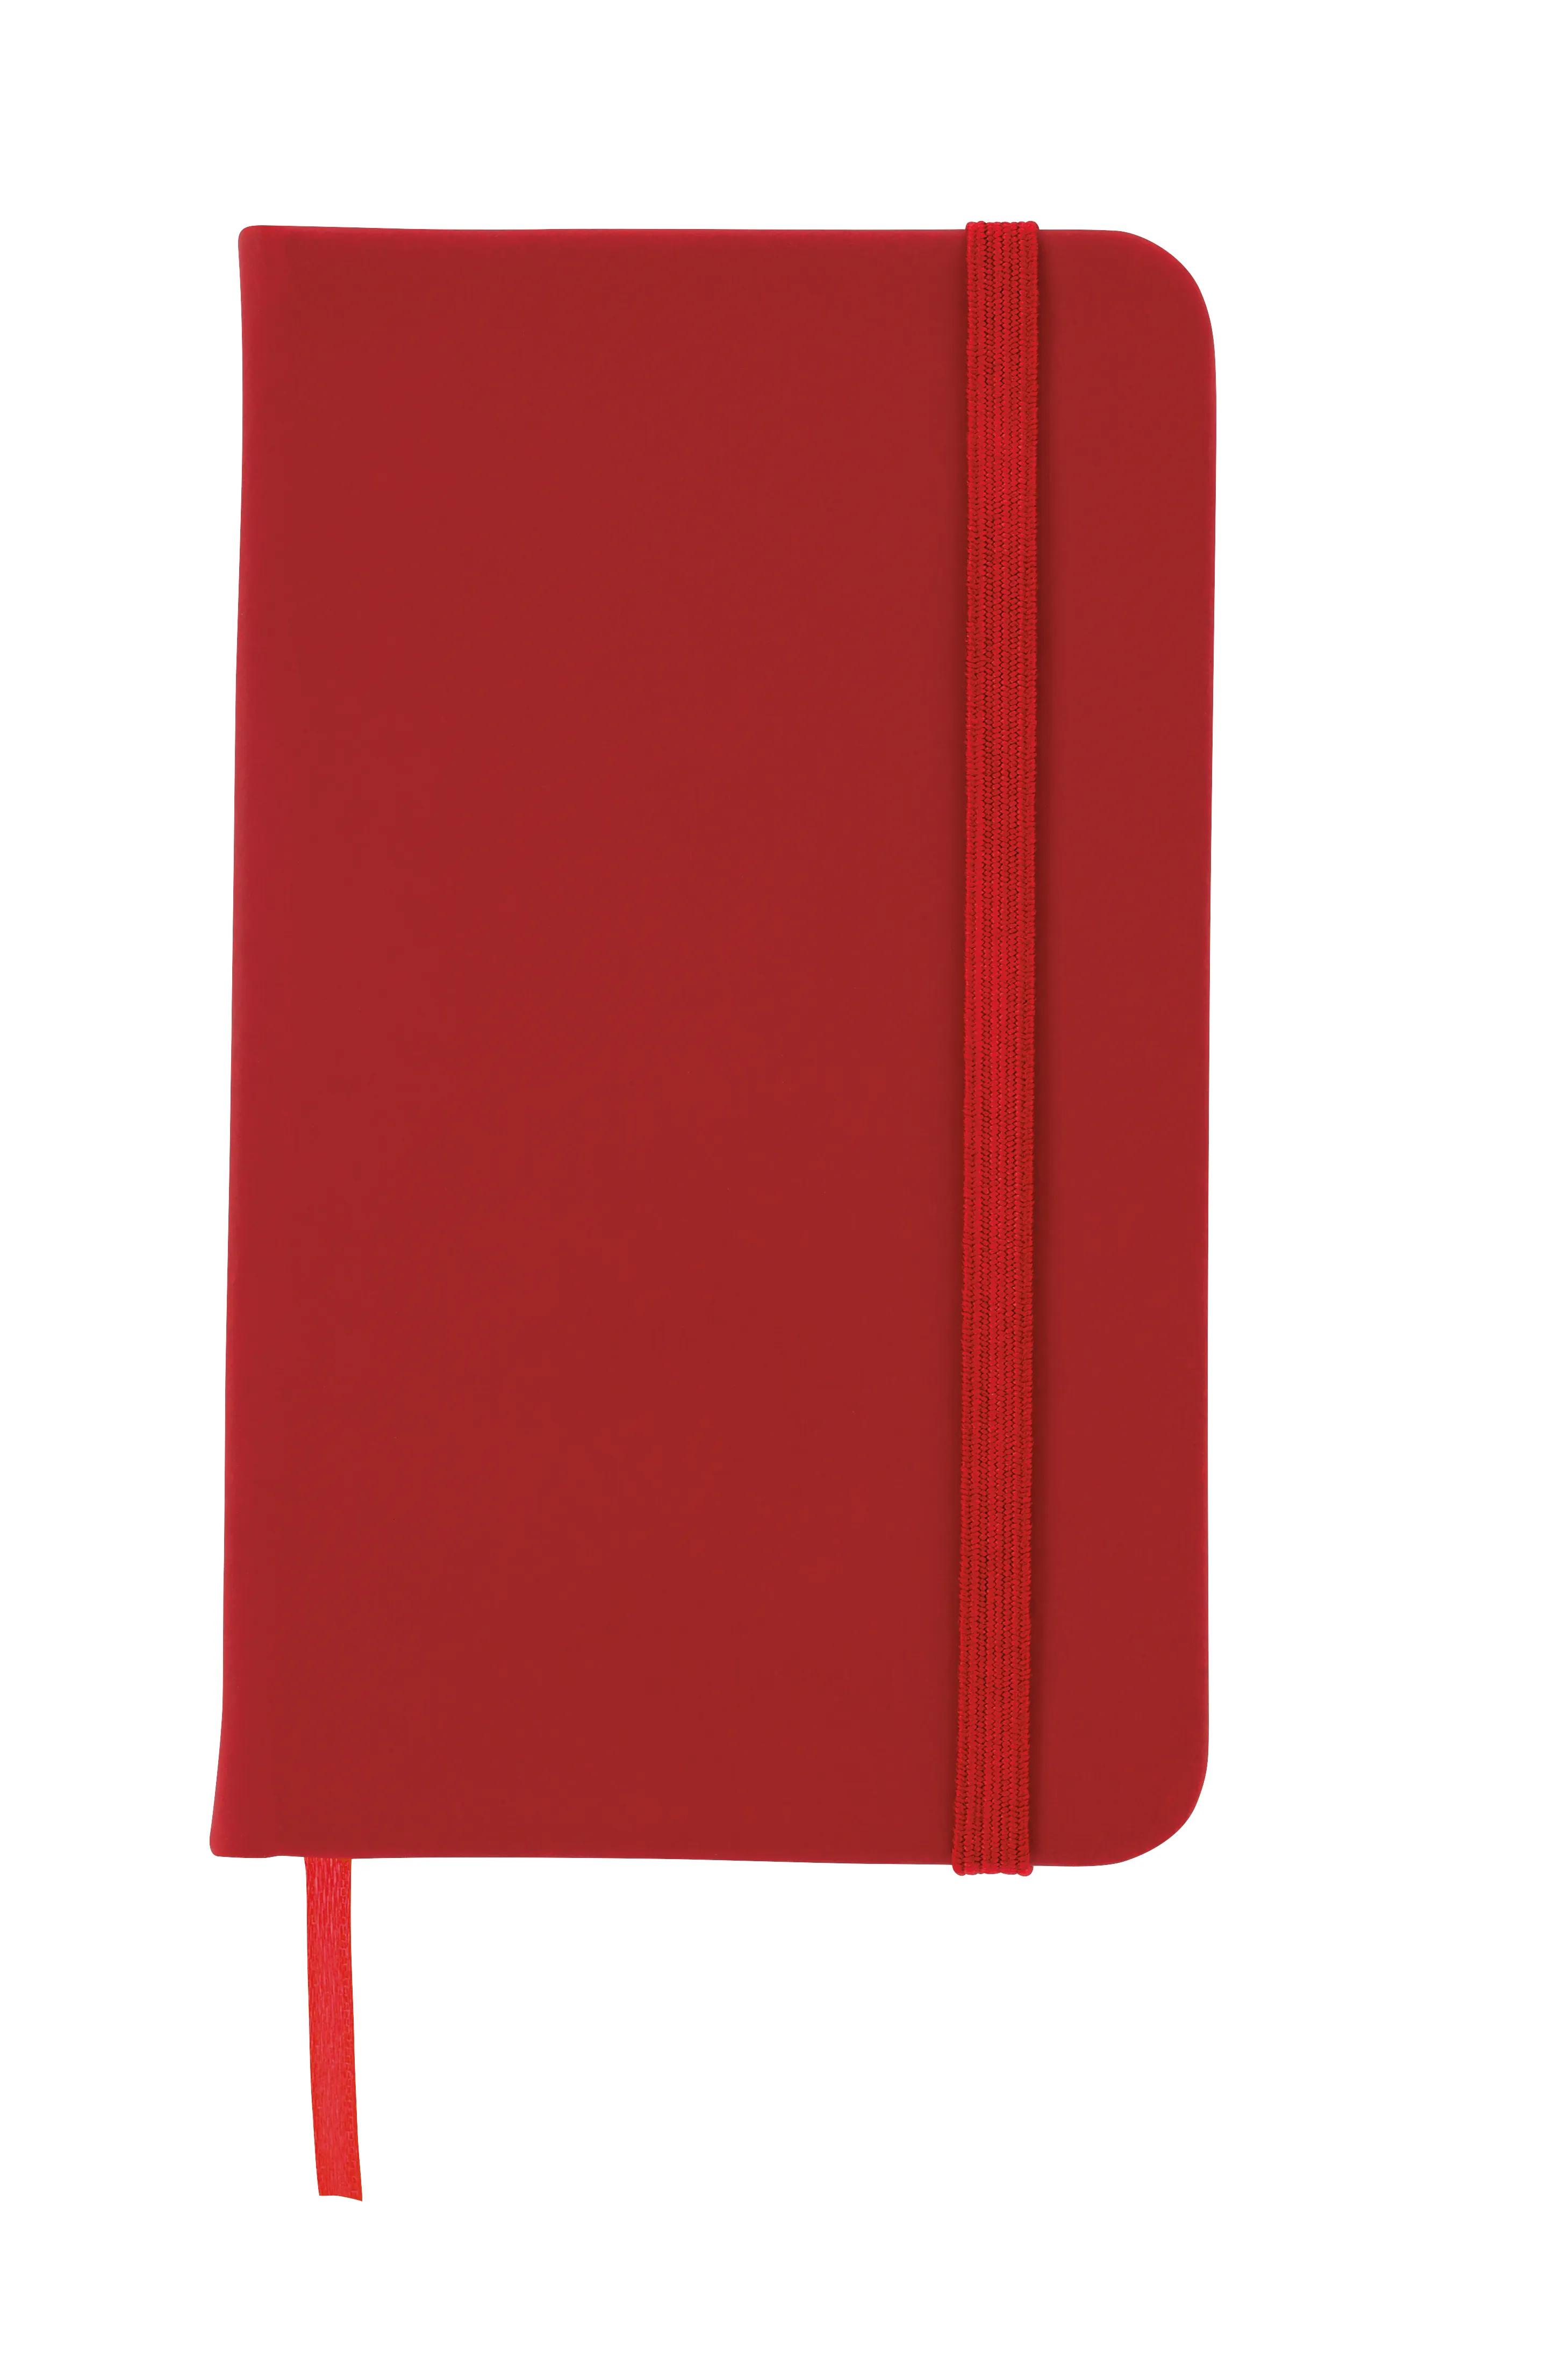 3” x 5” Journal Notebook 3 of 9